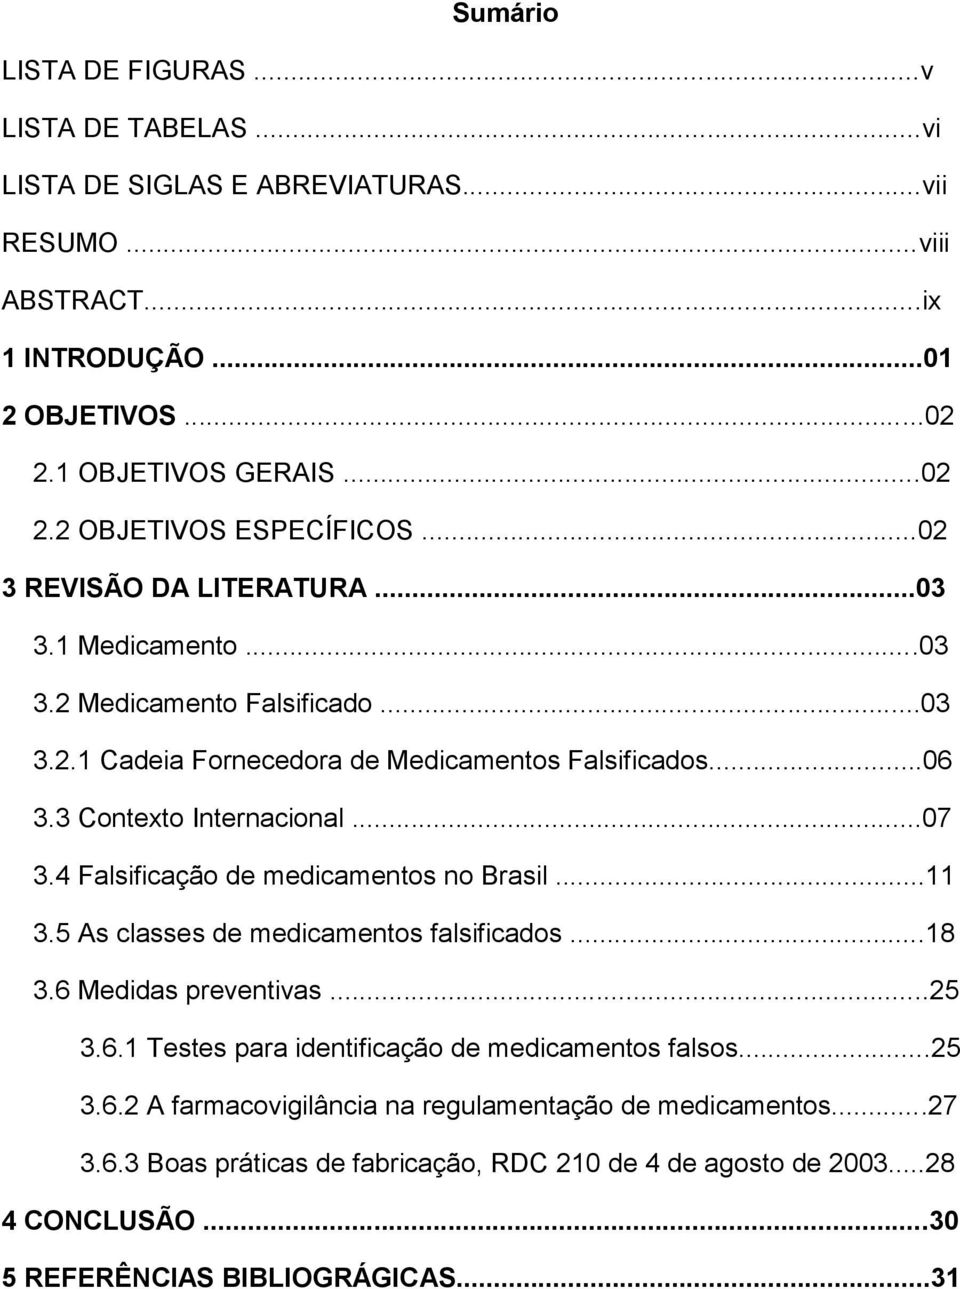 4 Falsificação de medicamentos no Brasil...11 3.5 As classes de medicamentos falsificados...18 3.6 Medidas preventivas...25 3.6.1 Testes para identificação de medicamentos falsos...25 3.6.2 A farmacovigilância na regulamentação de medicamentos.